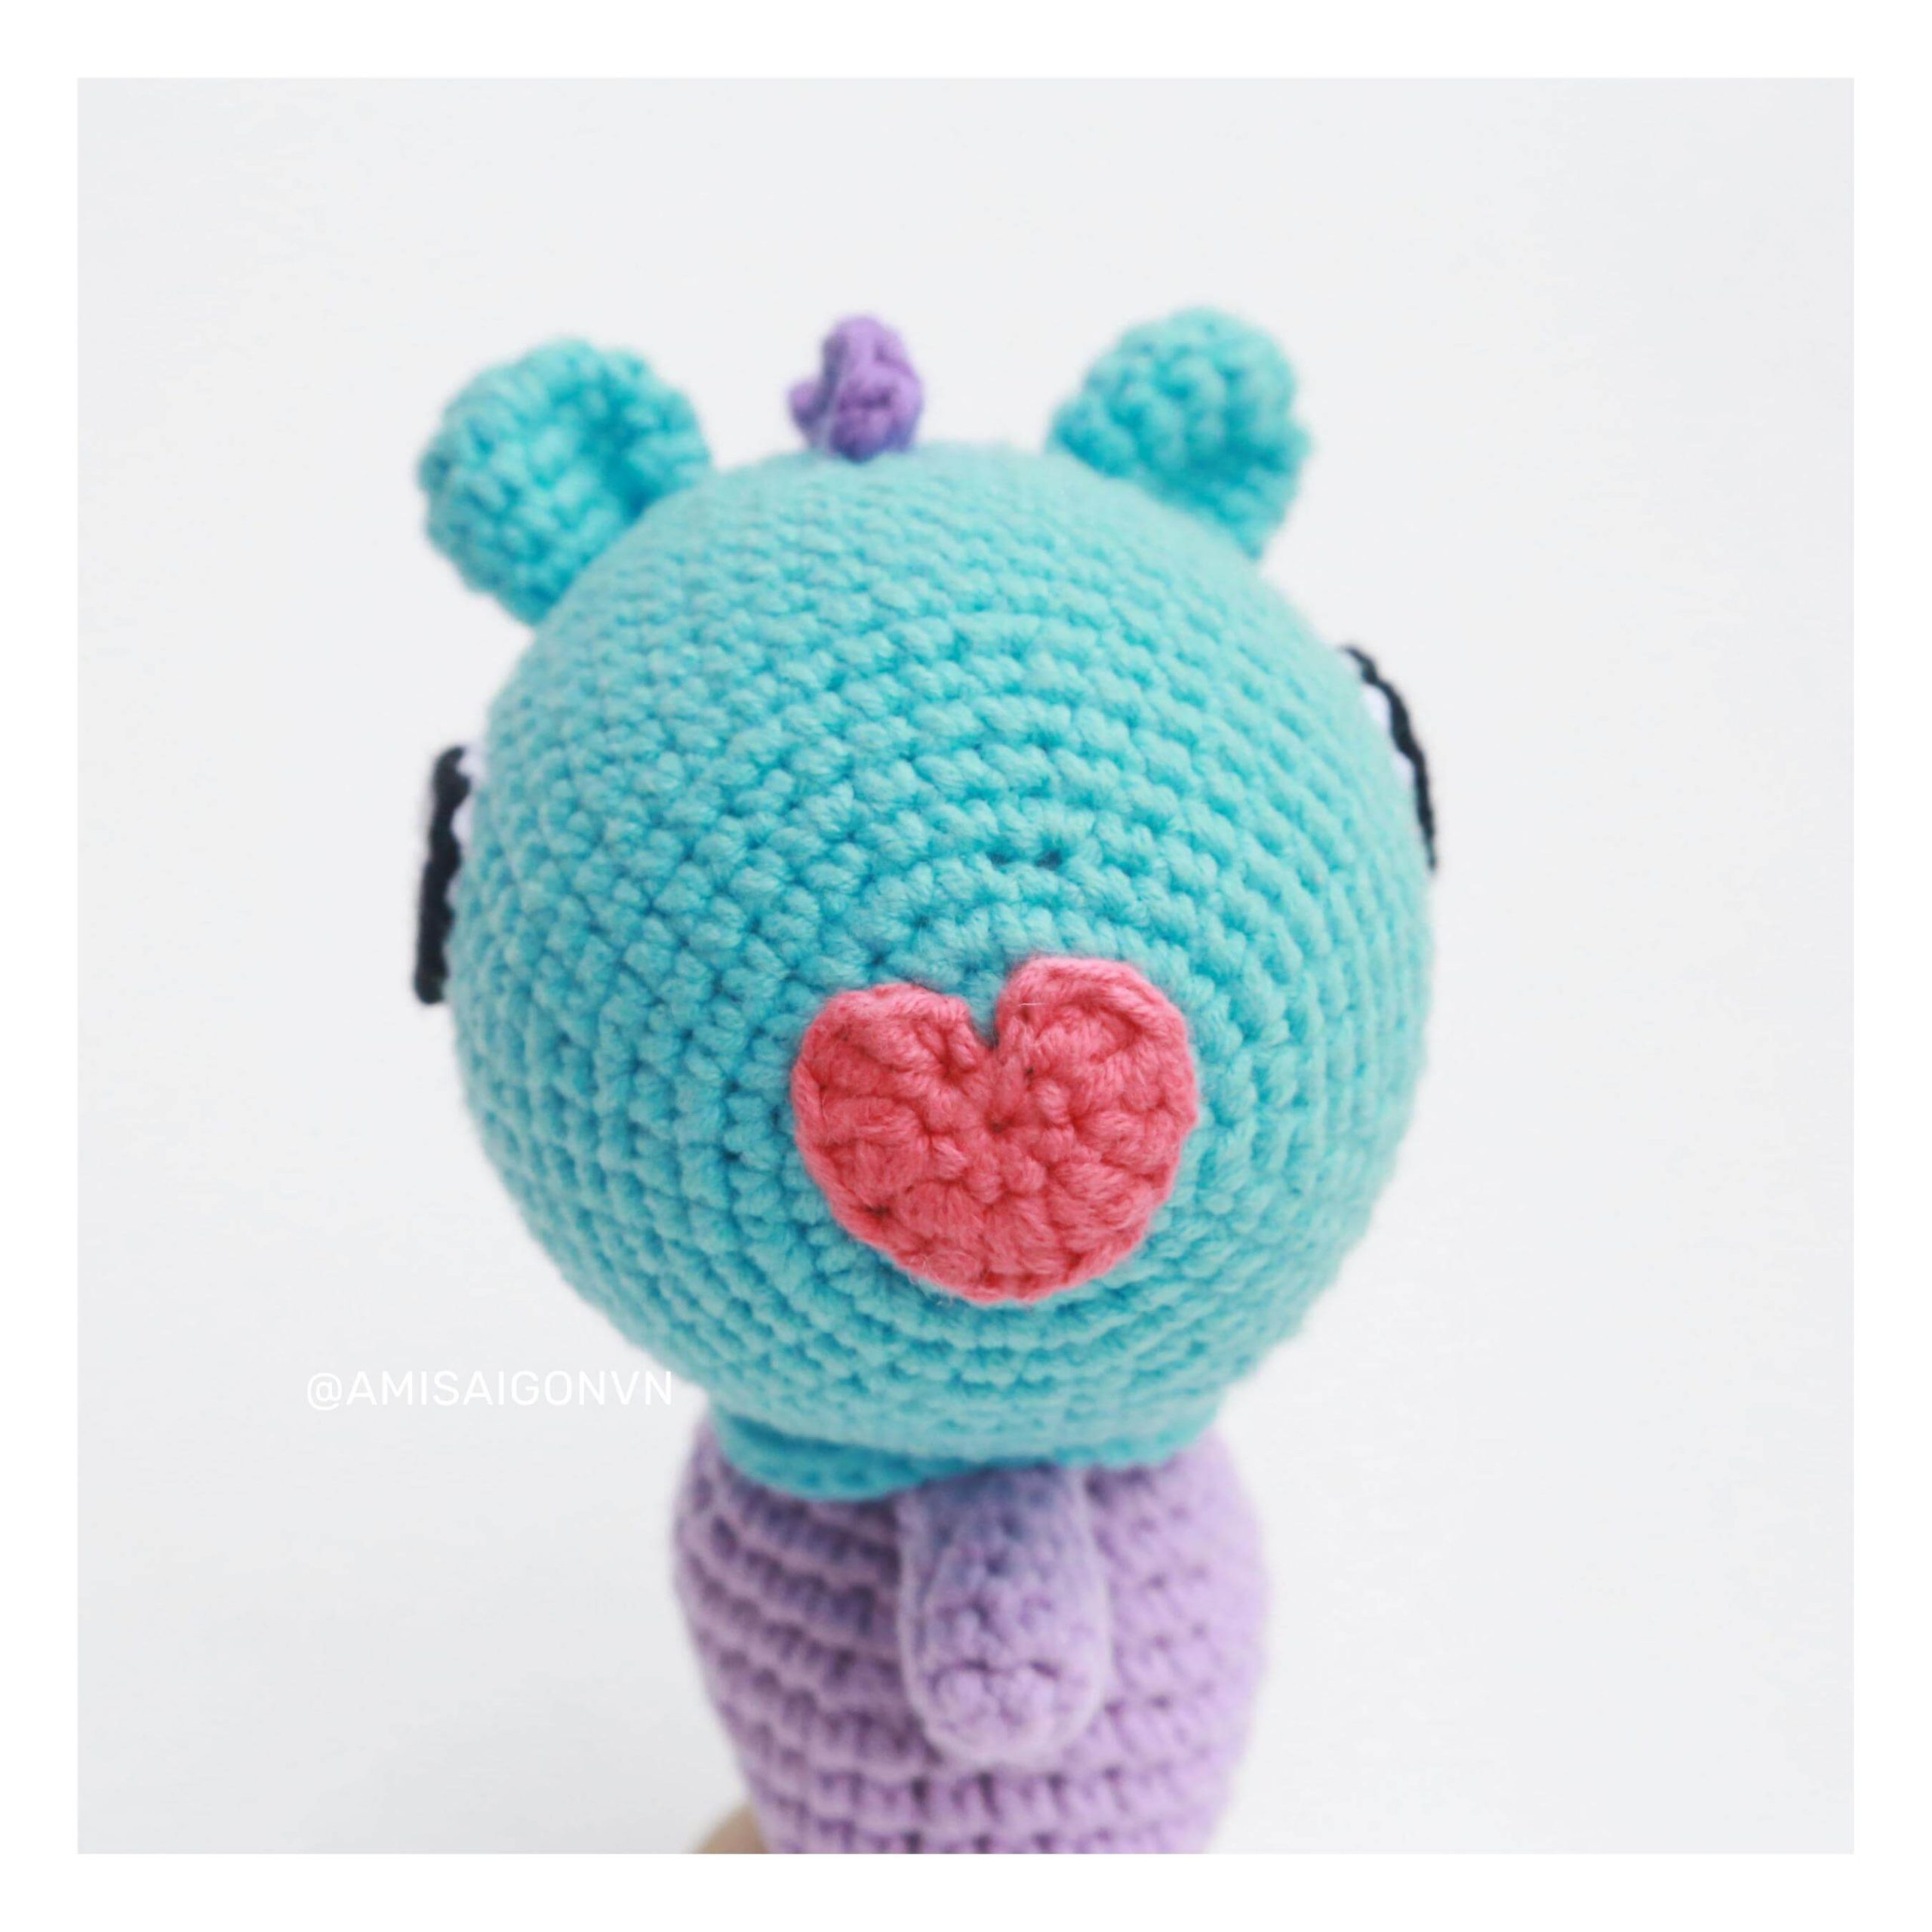 mang-amigurumi-crochet-pattern-amisaigon-bts-bt21 (11)